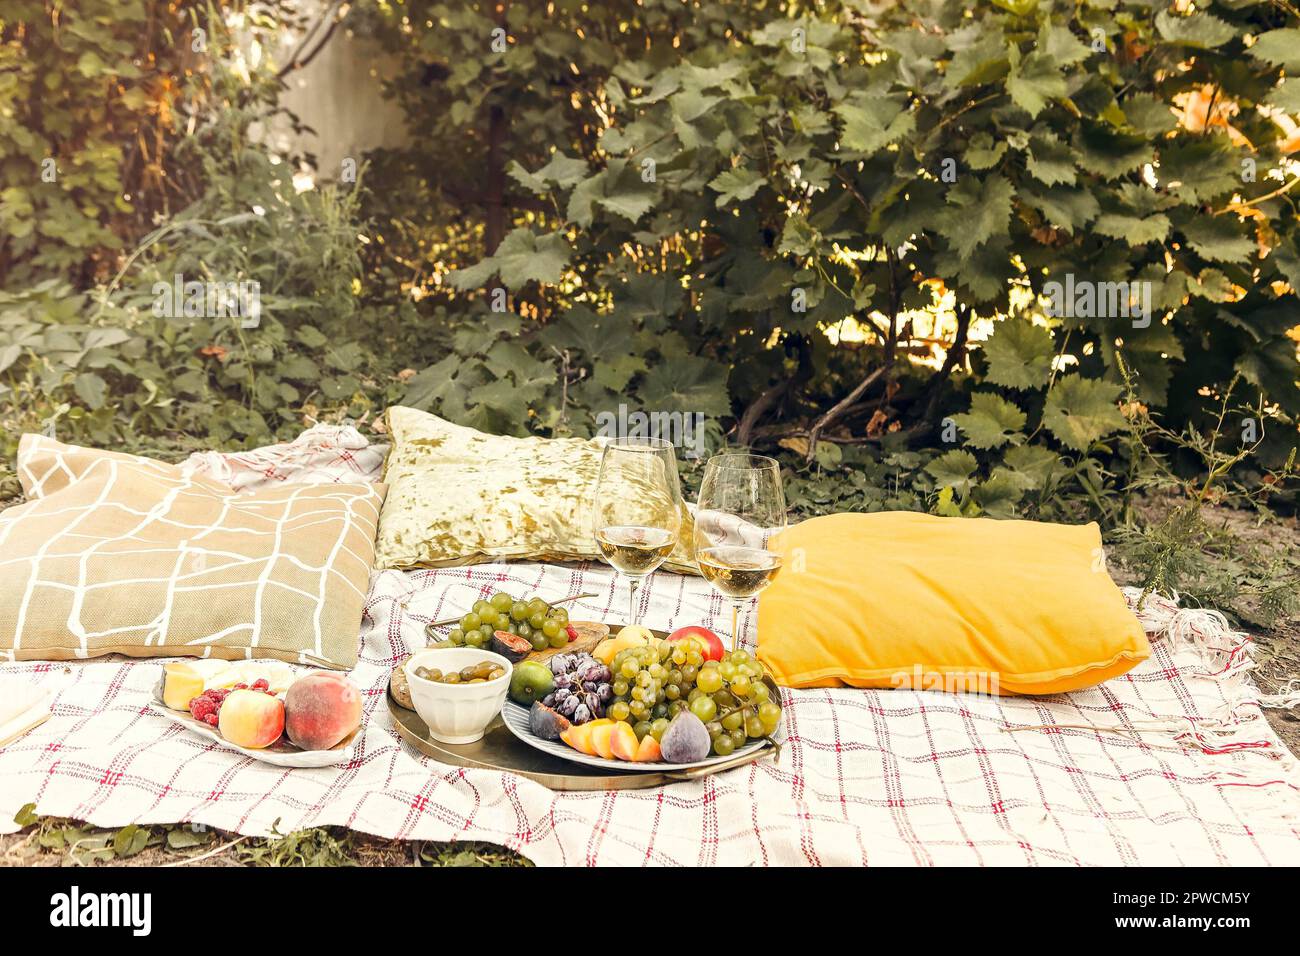 Paar Gläser mit Wein in der Nähe von Tischen mit verschiedenen platziert Frische reife Früchte auf Decke mit Kissen während des romantischen Picknicks Im Garten Stockfoto